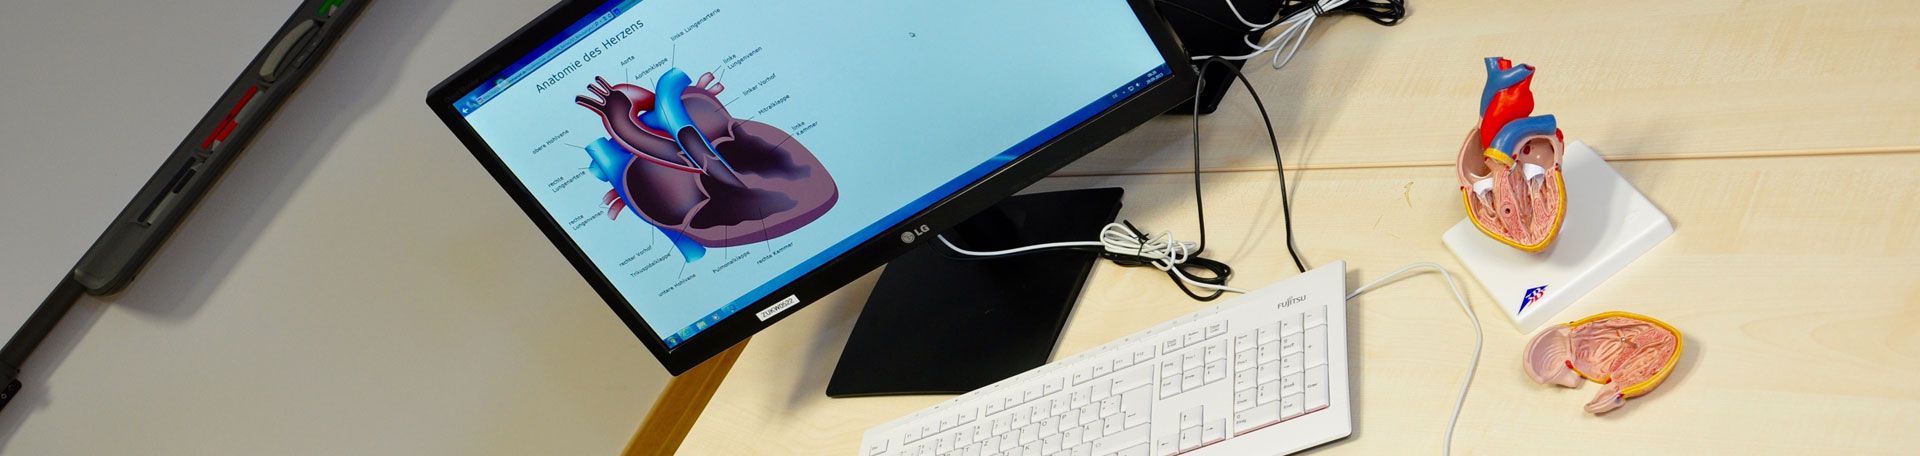 Illustrationsbild: Computer und Herzmodell auf Schreibtisch